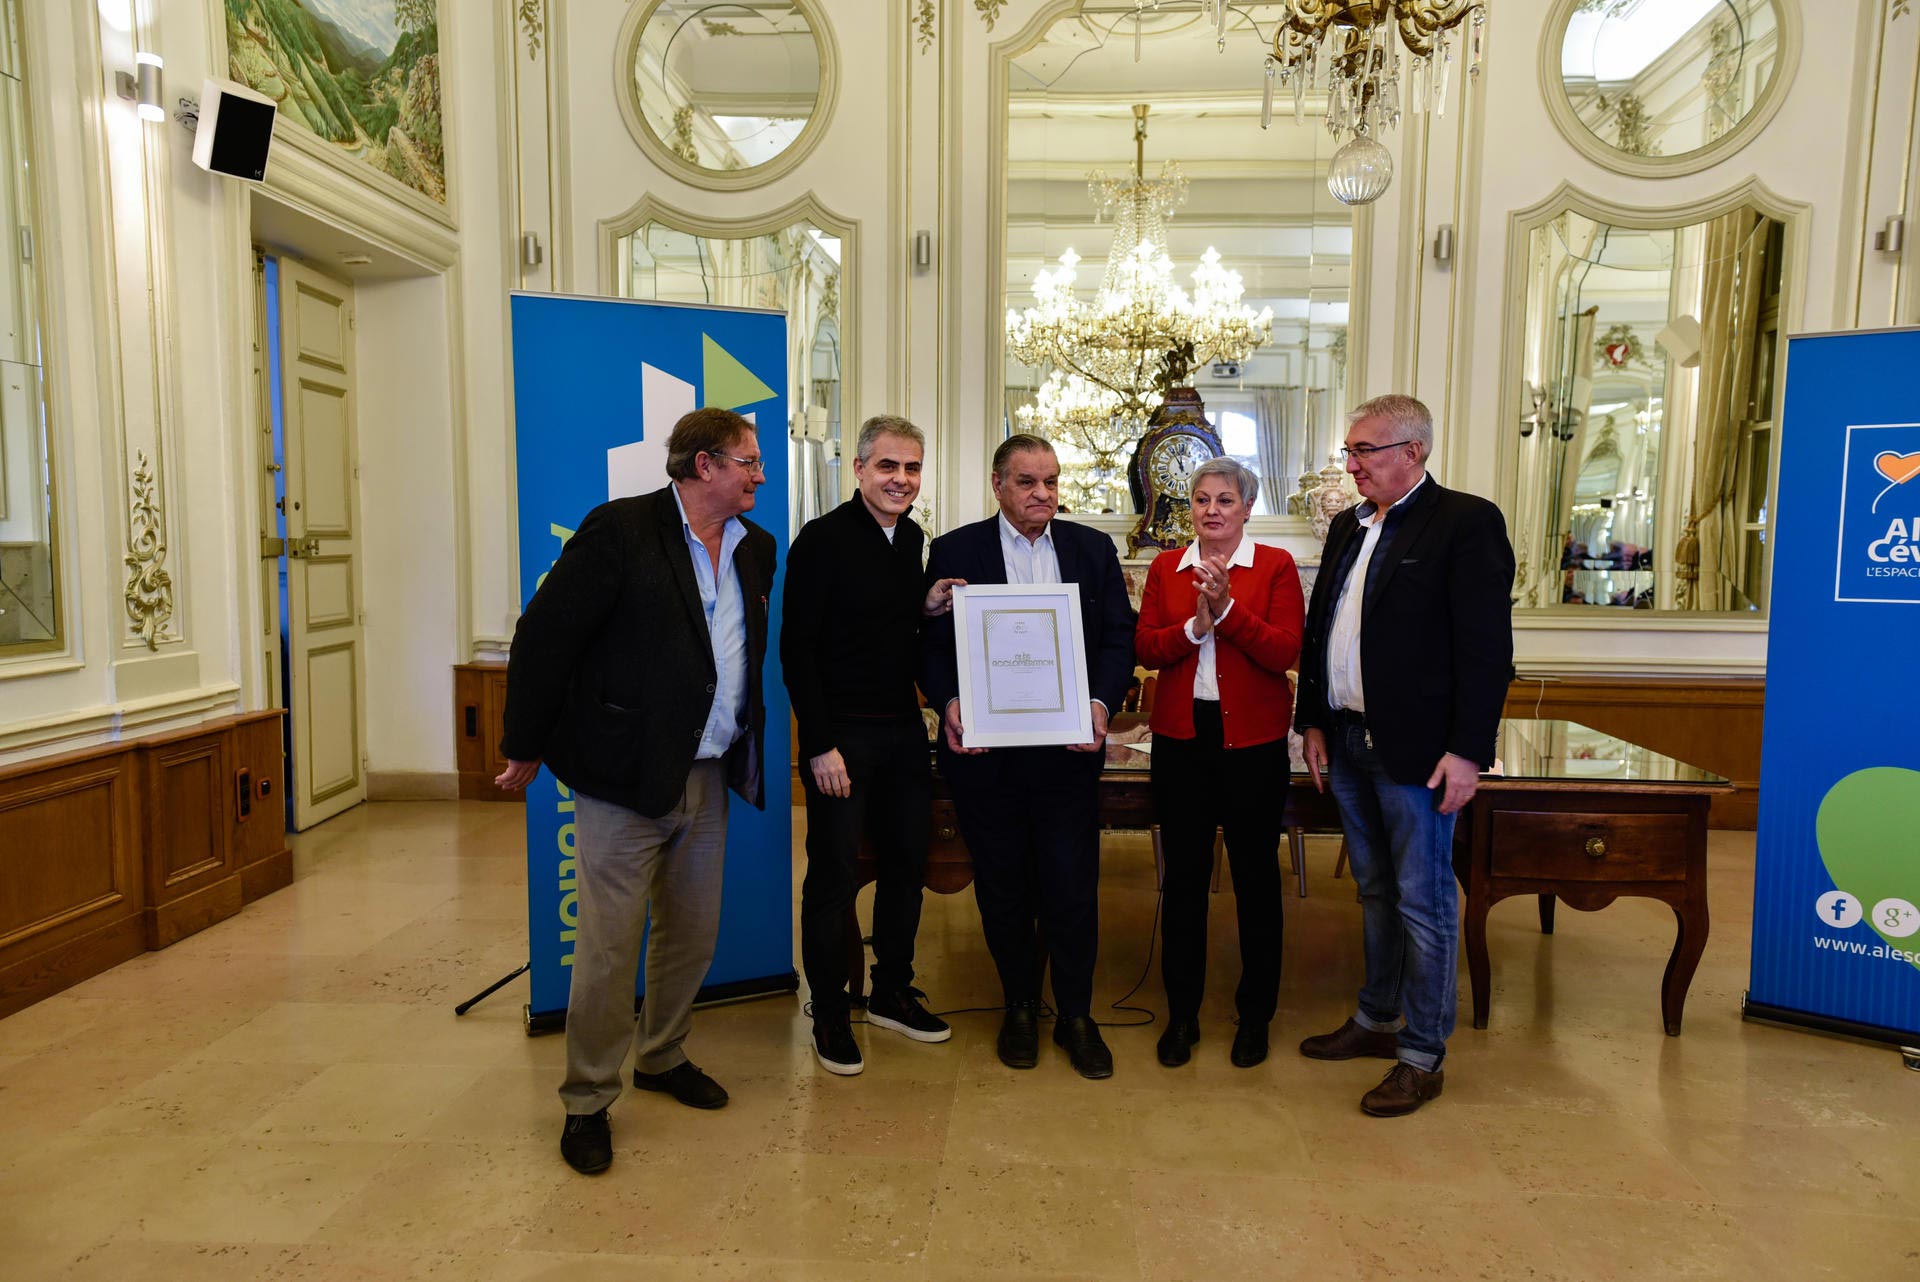 L’Alésien Jean-Philippe Gatien, vice-champion olympique de tennis de table (Barcelone, 1992), actuellement directeur sportif des Jeux Olympiques et Paralympiques de Paris 2024, a officiellement remis à la Ville d’Alès le label “Terre de Jeux 2024” le 24 décembre 2019.